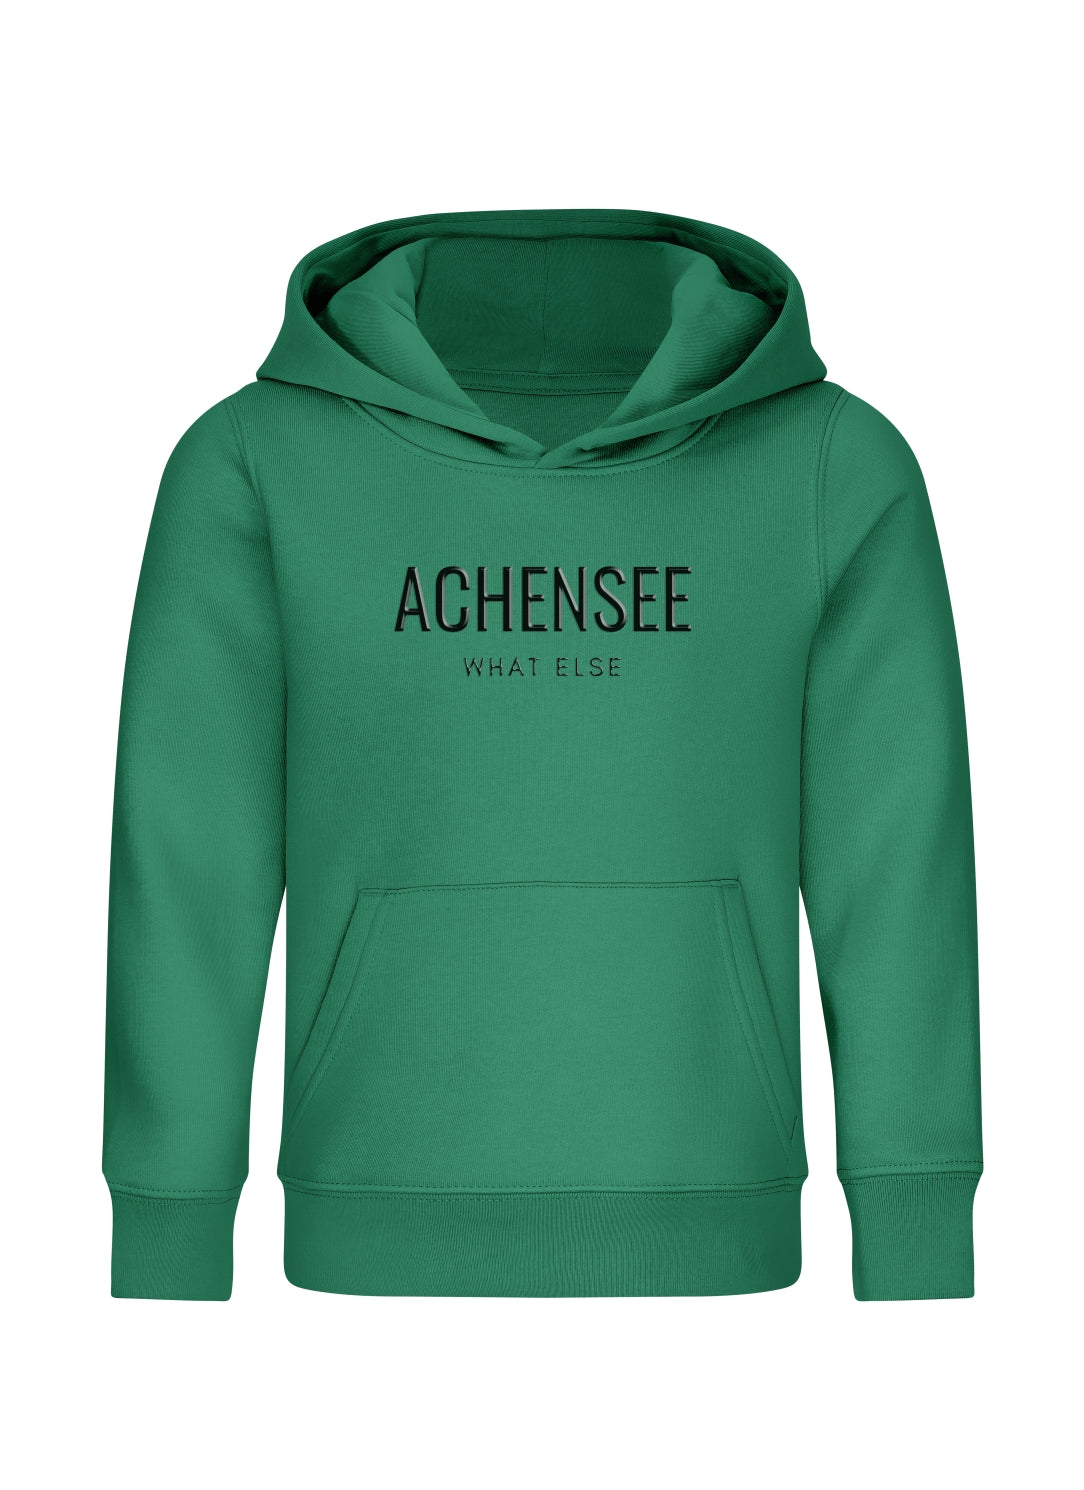 Achensee - What Else (Hoodie Kinder)